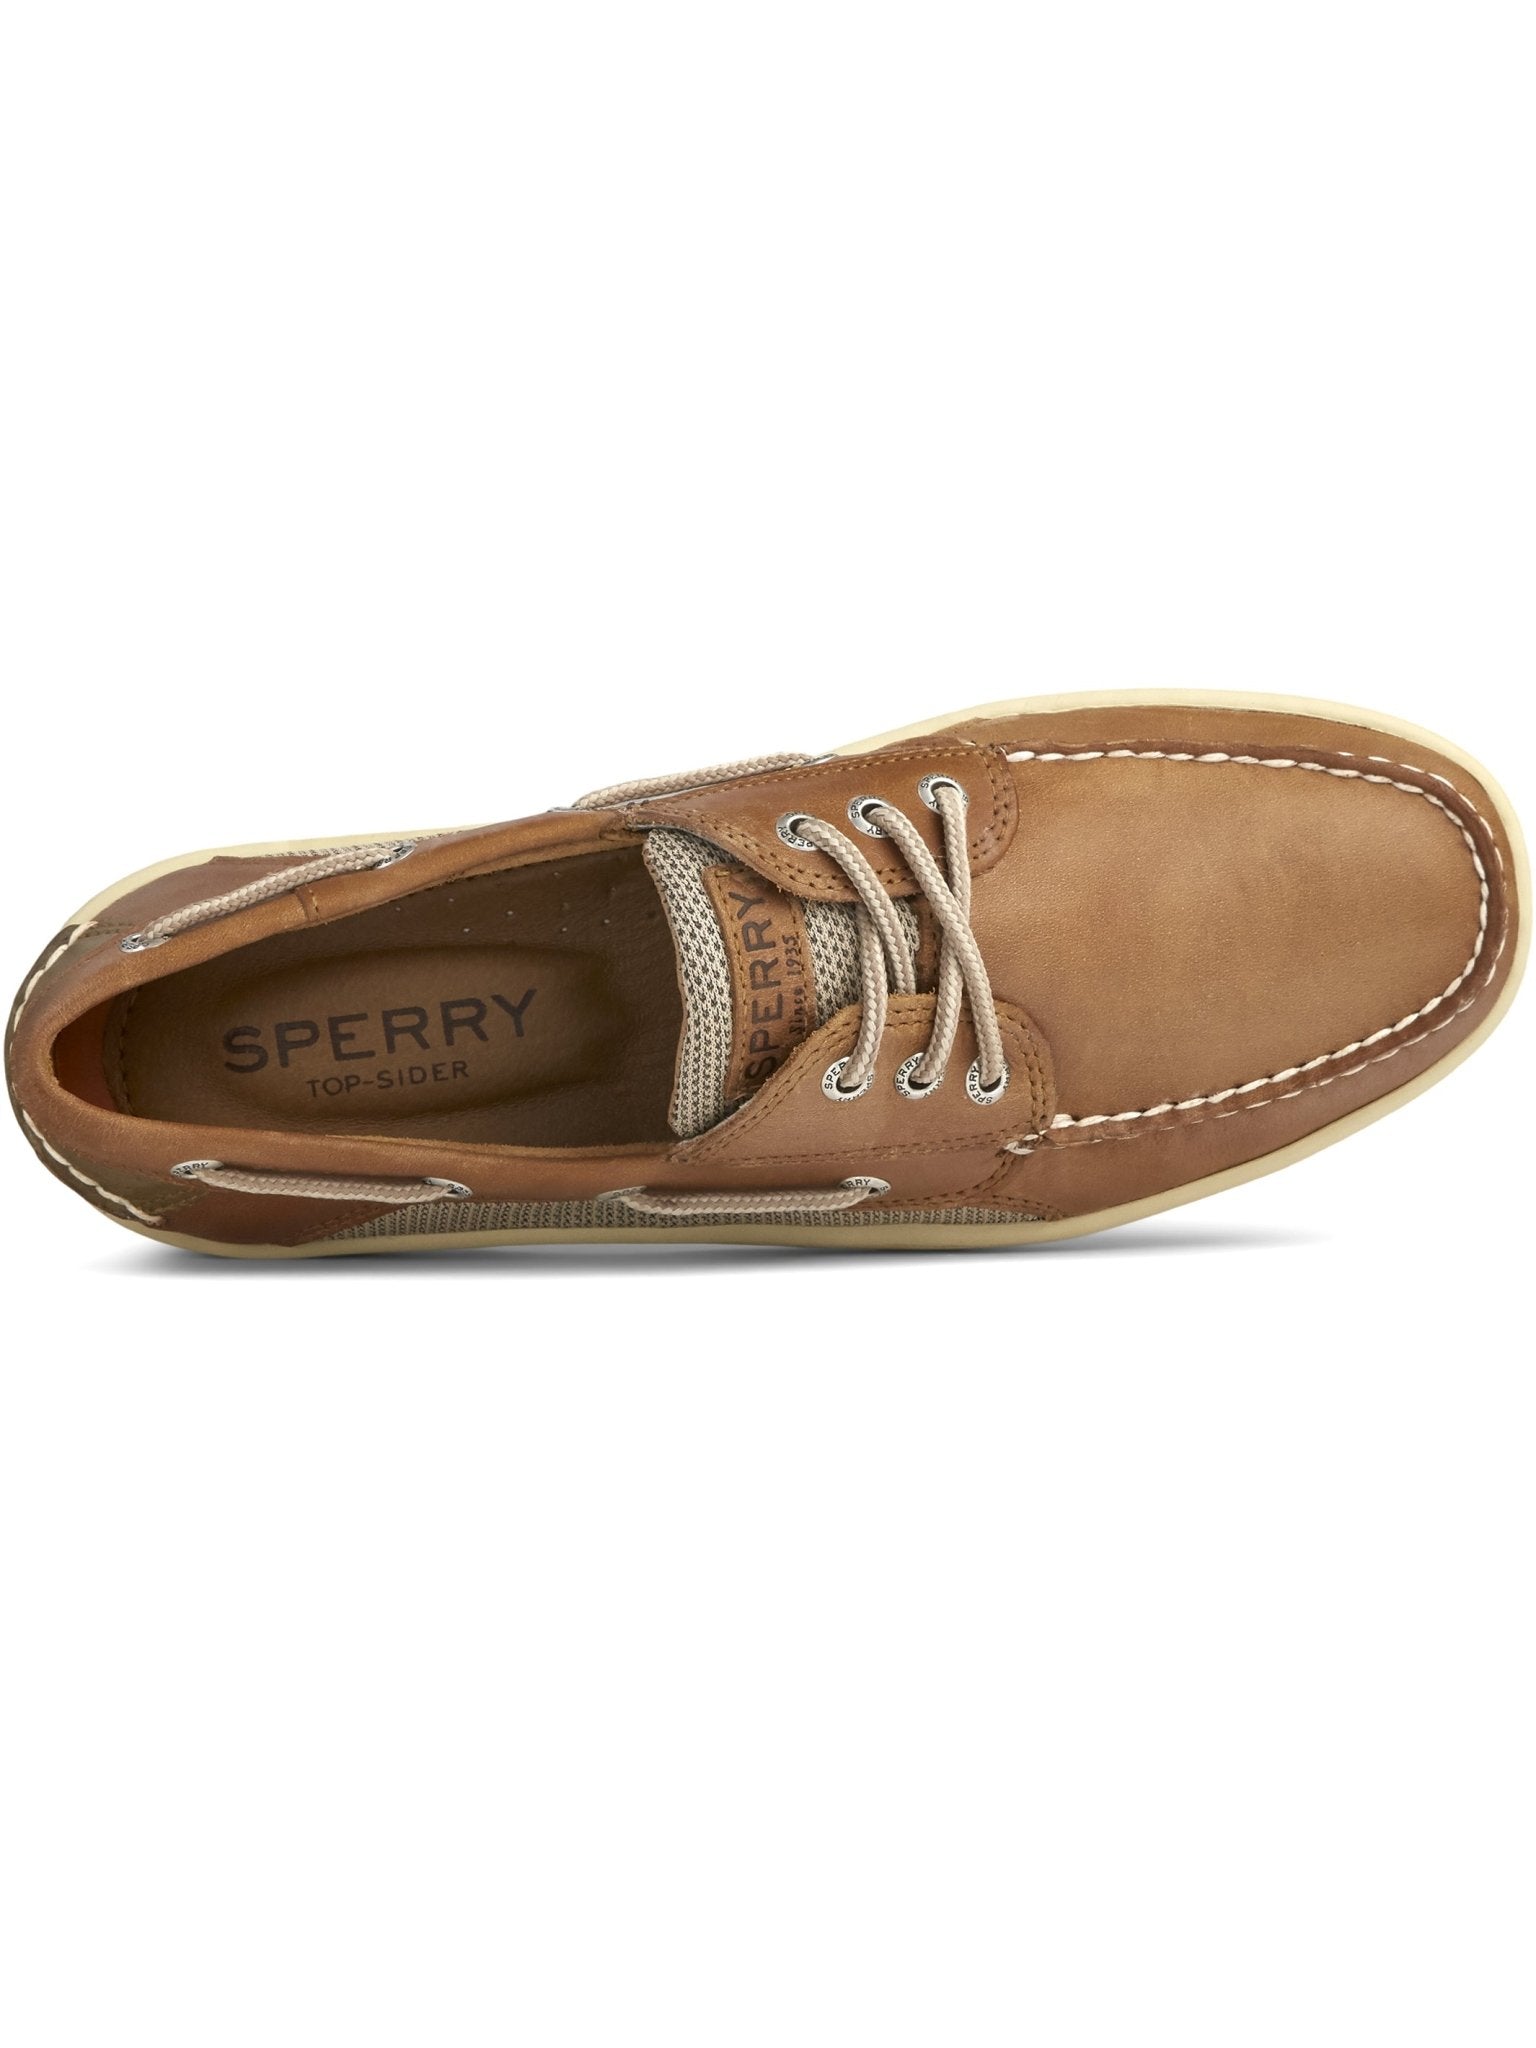 Sperry Sperry - Men's boat shoe - Billfish 3 - Eye Boat Shoe Dark Tan - Deck shoes Shoes